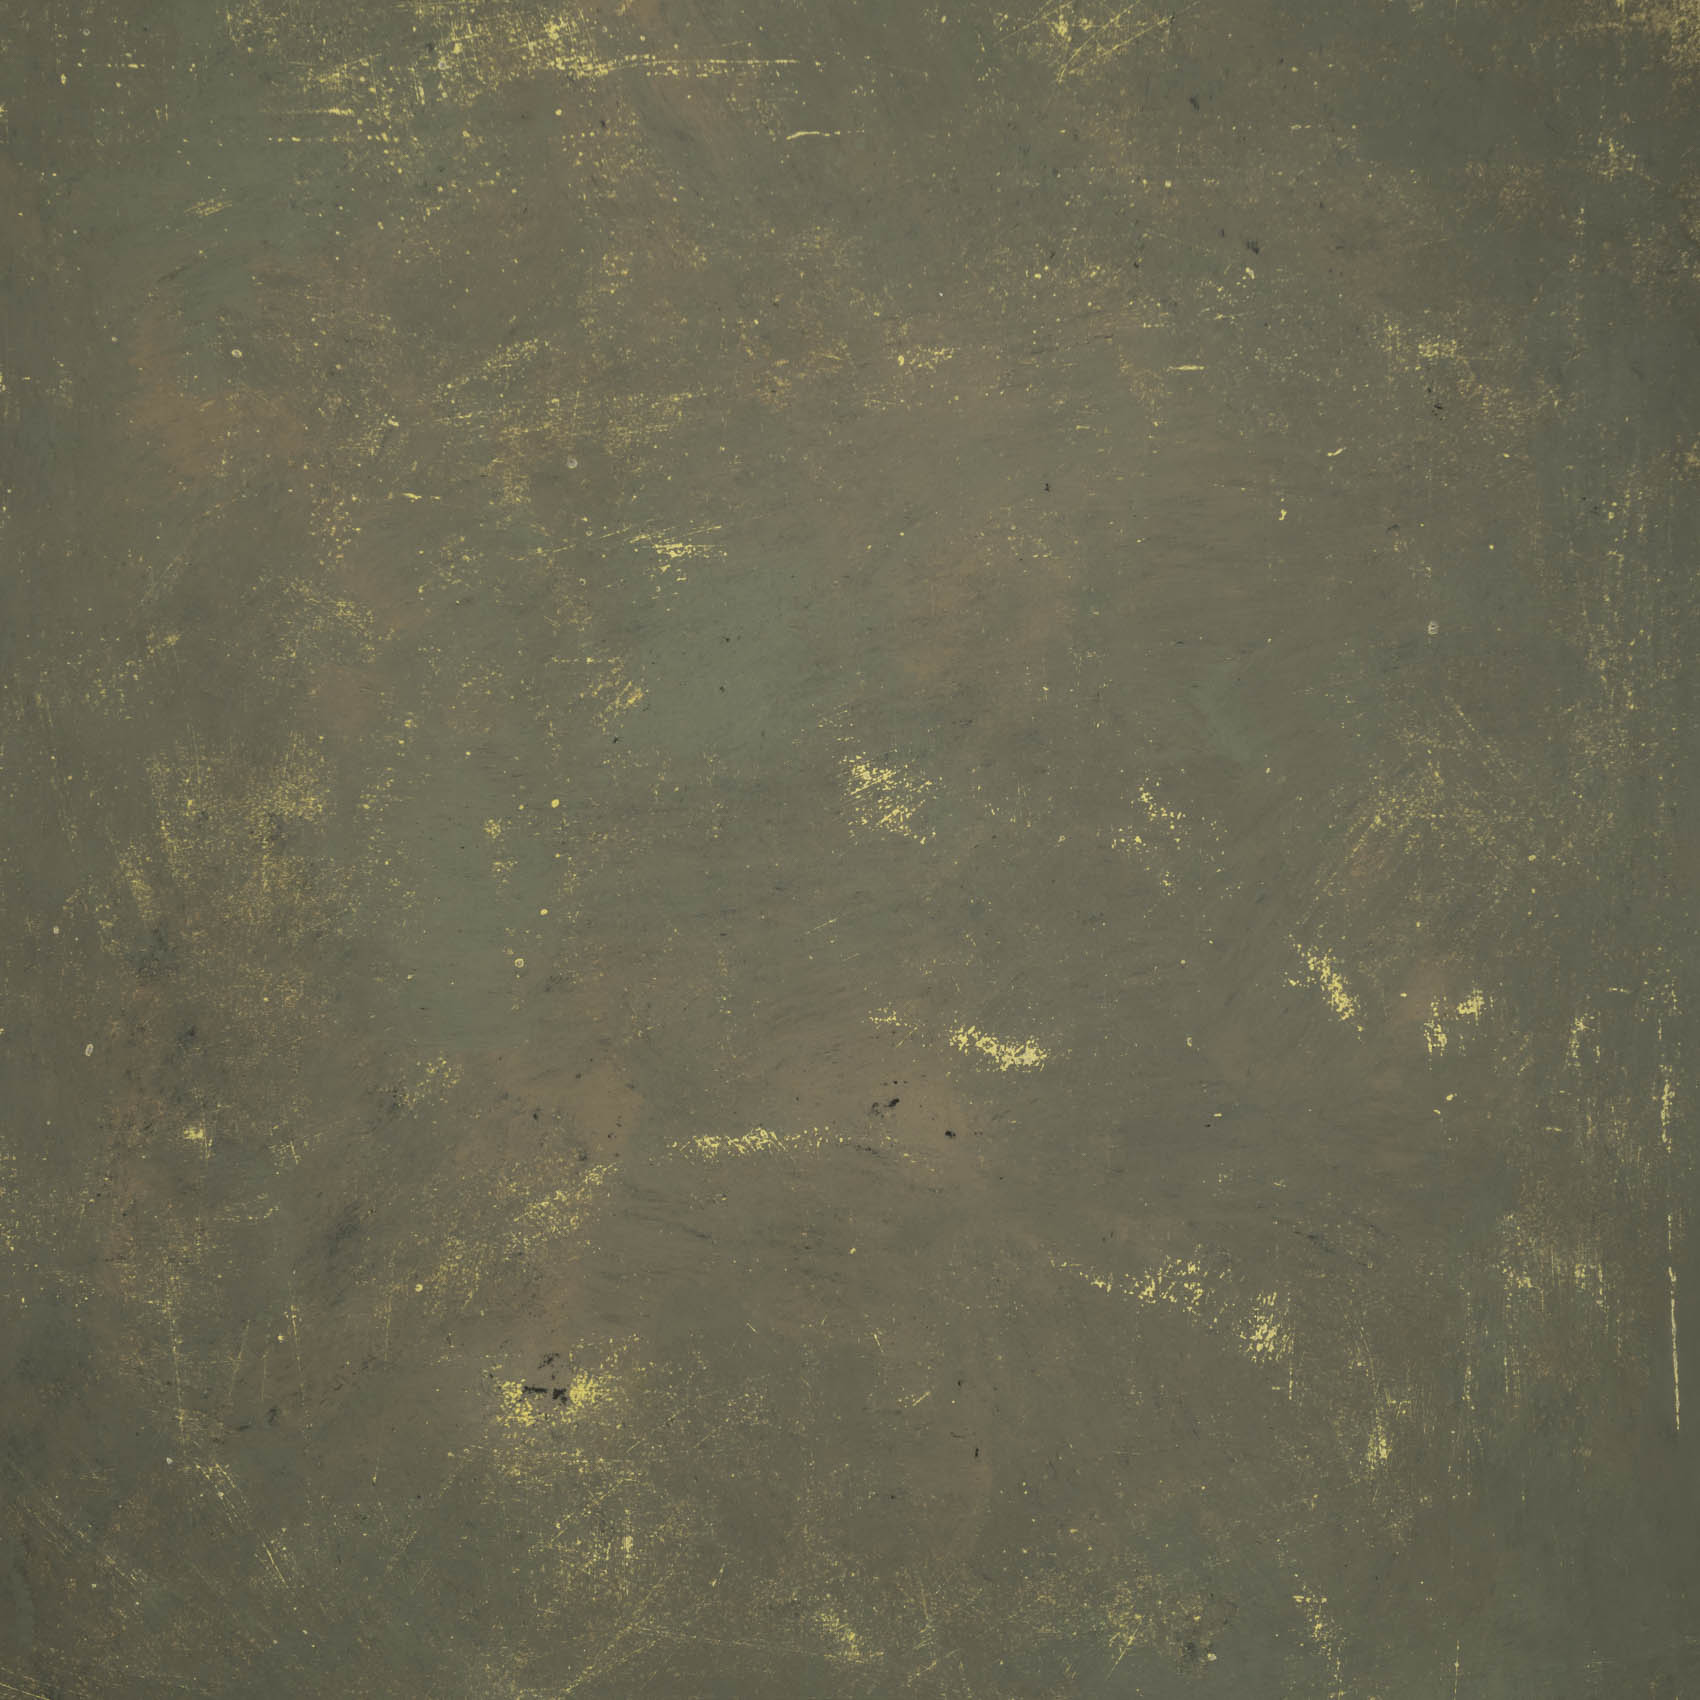 Oliv-Grün Studio Backdrop Fotohintergrund mit gelben Einschüssen und Kratzern